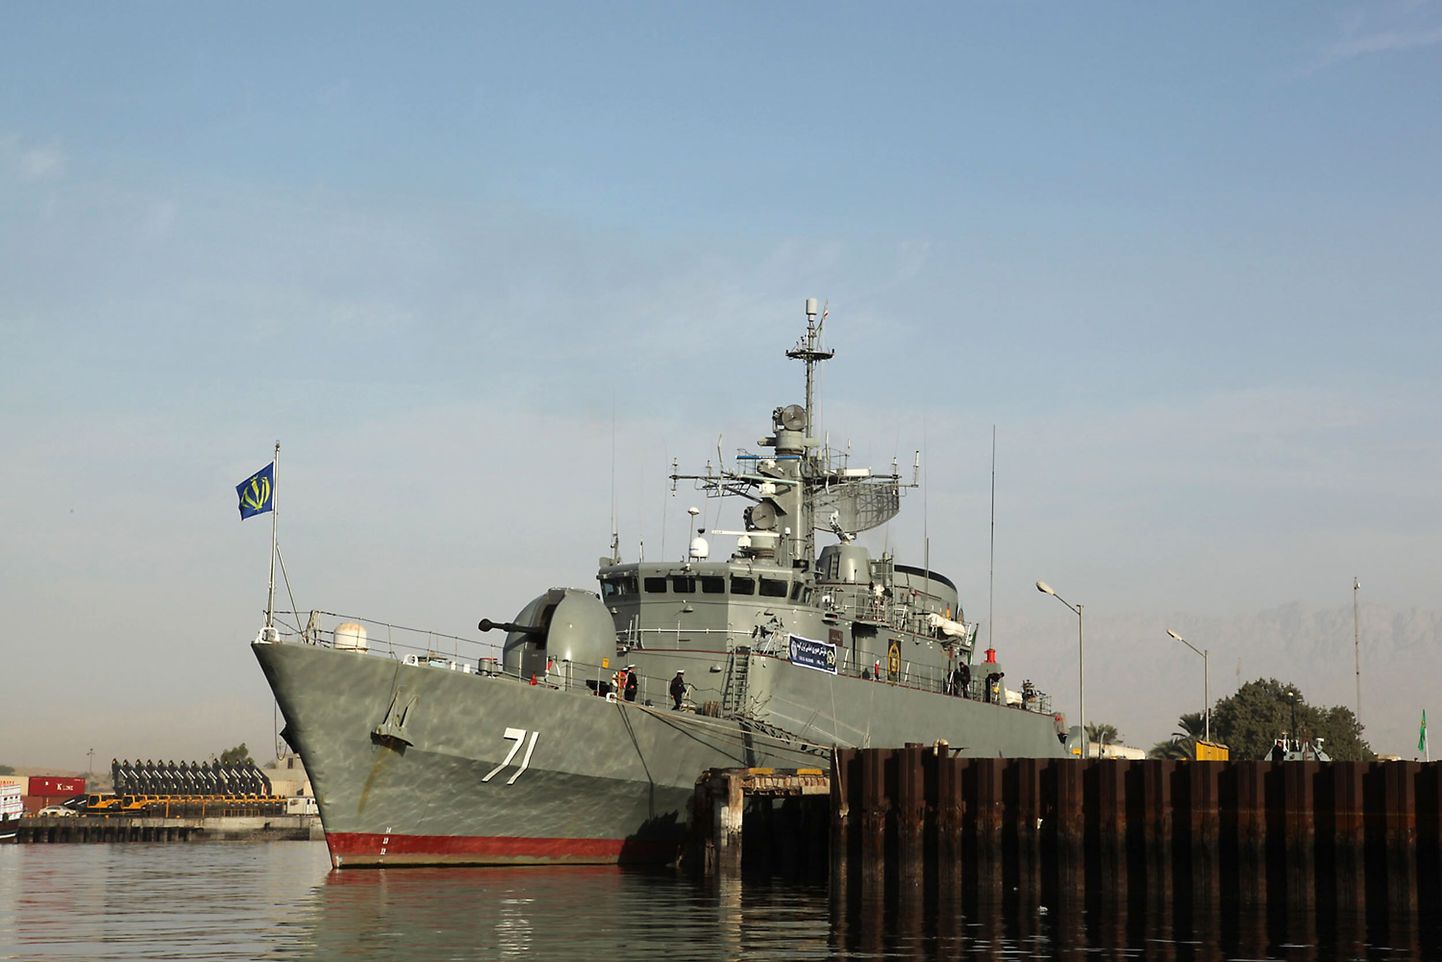 Iraani sõjalaev Alvand lähenemas Suessi kanalile.